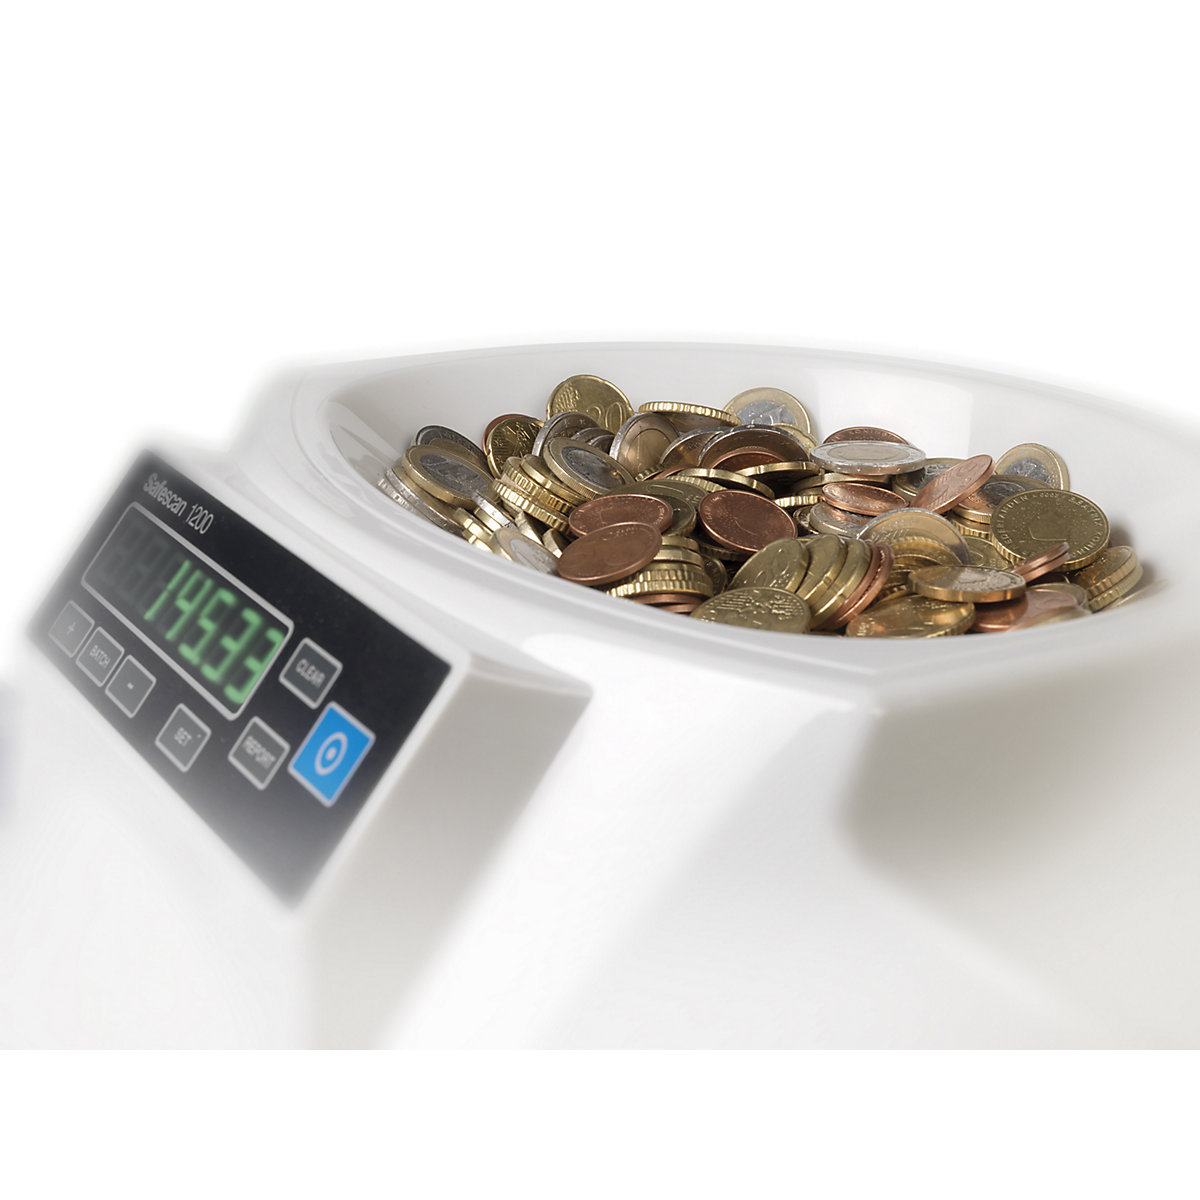 Naprava za štetje in razvrščanje kovancev – Safescan (Slika izdelka 2)-1